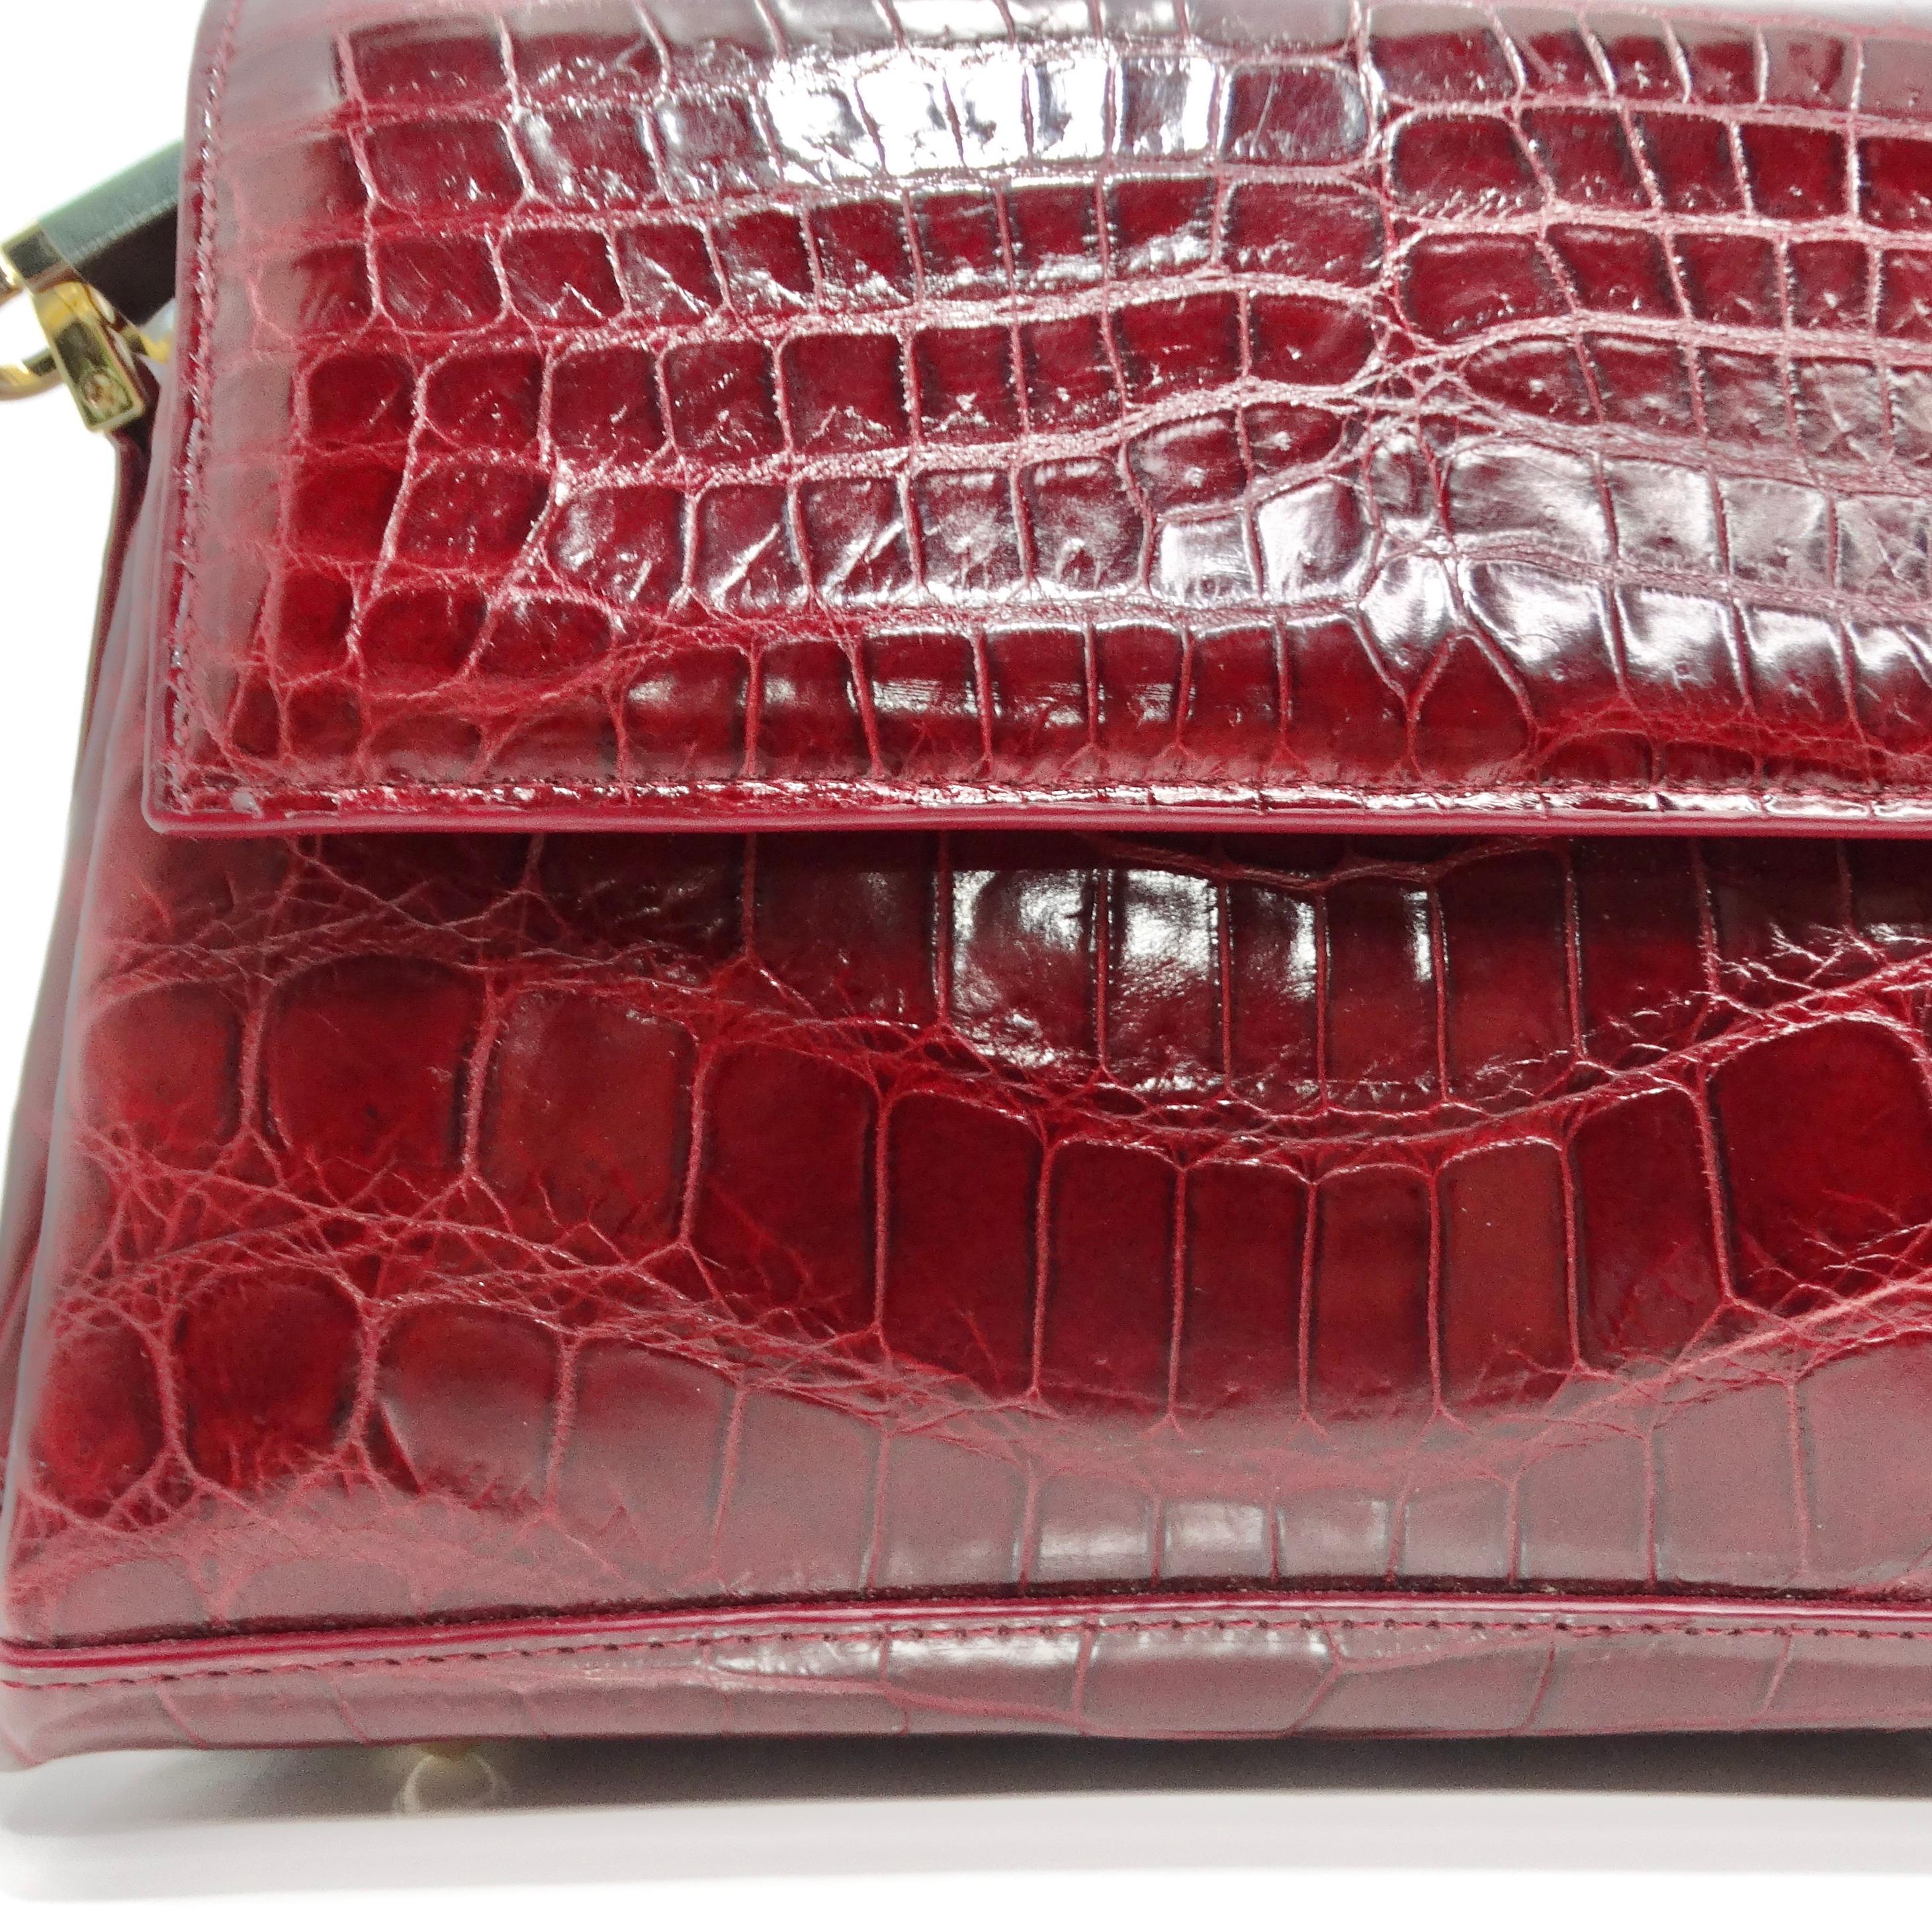 Le sac à main structuré en cuir de crocodile rouge de BC Luxury est un accessoire étonnant qui respire la sophistication et l'élégance. Confectionné en luxueux cuir de crocodile rouge bordeaux, ce mini-sac à main structuré ne manquera pas de faire